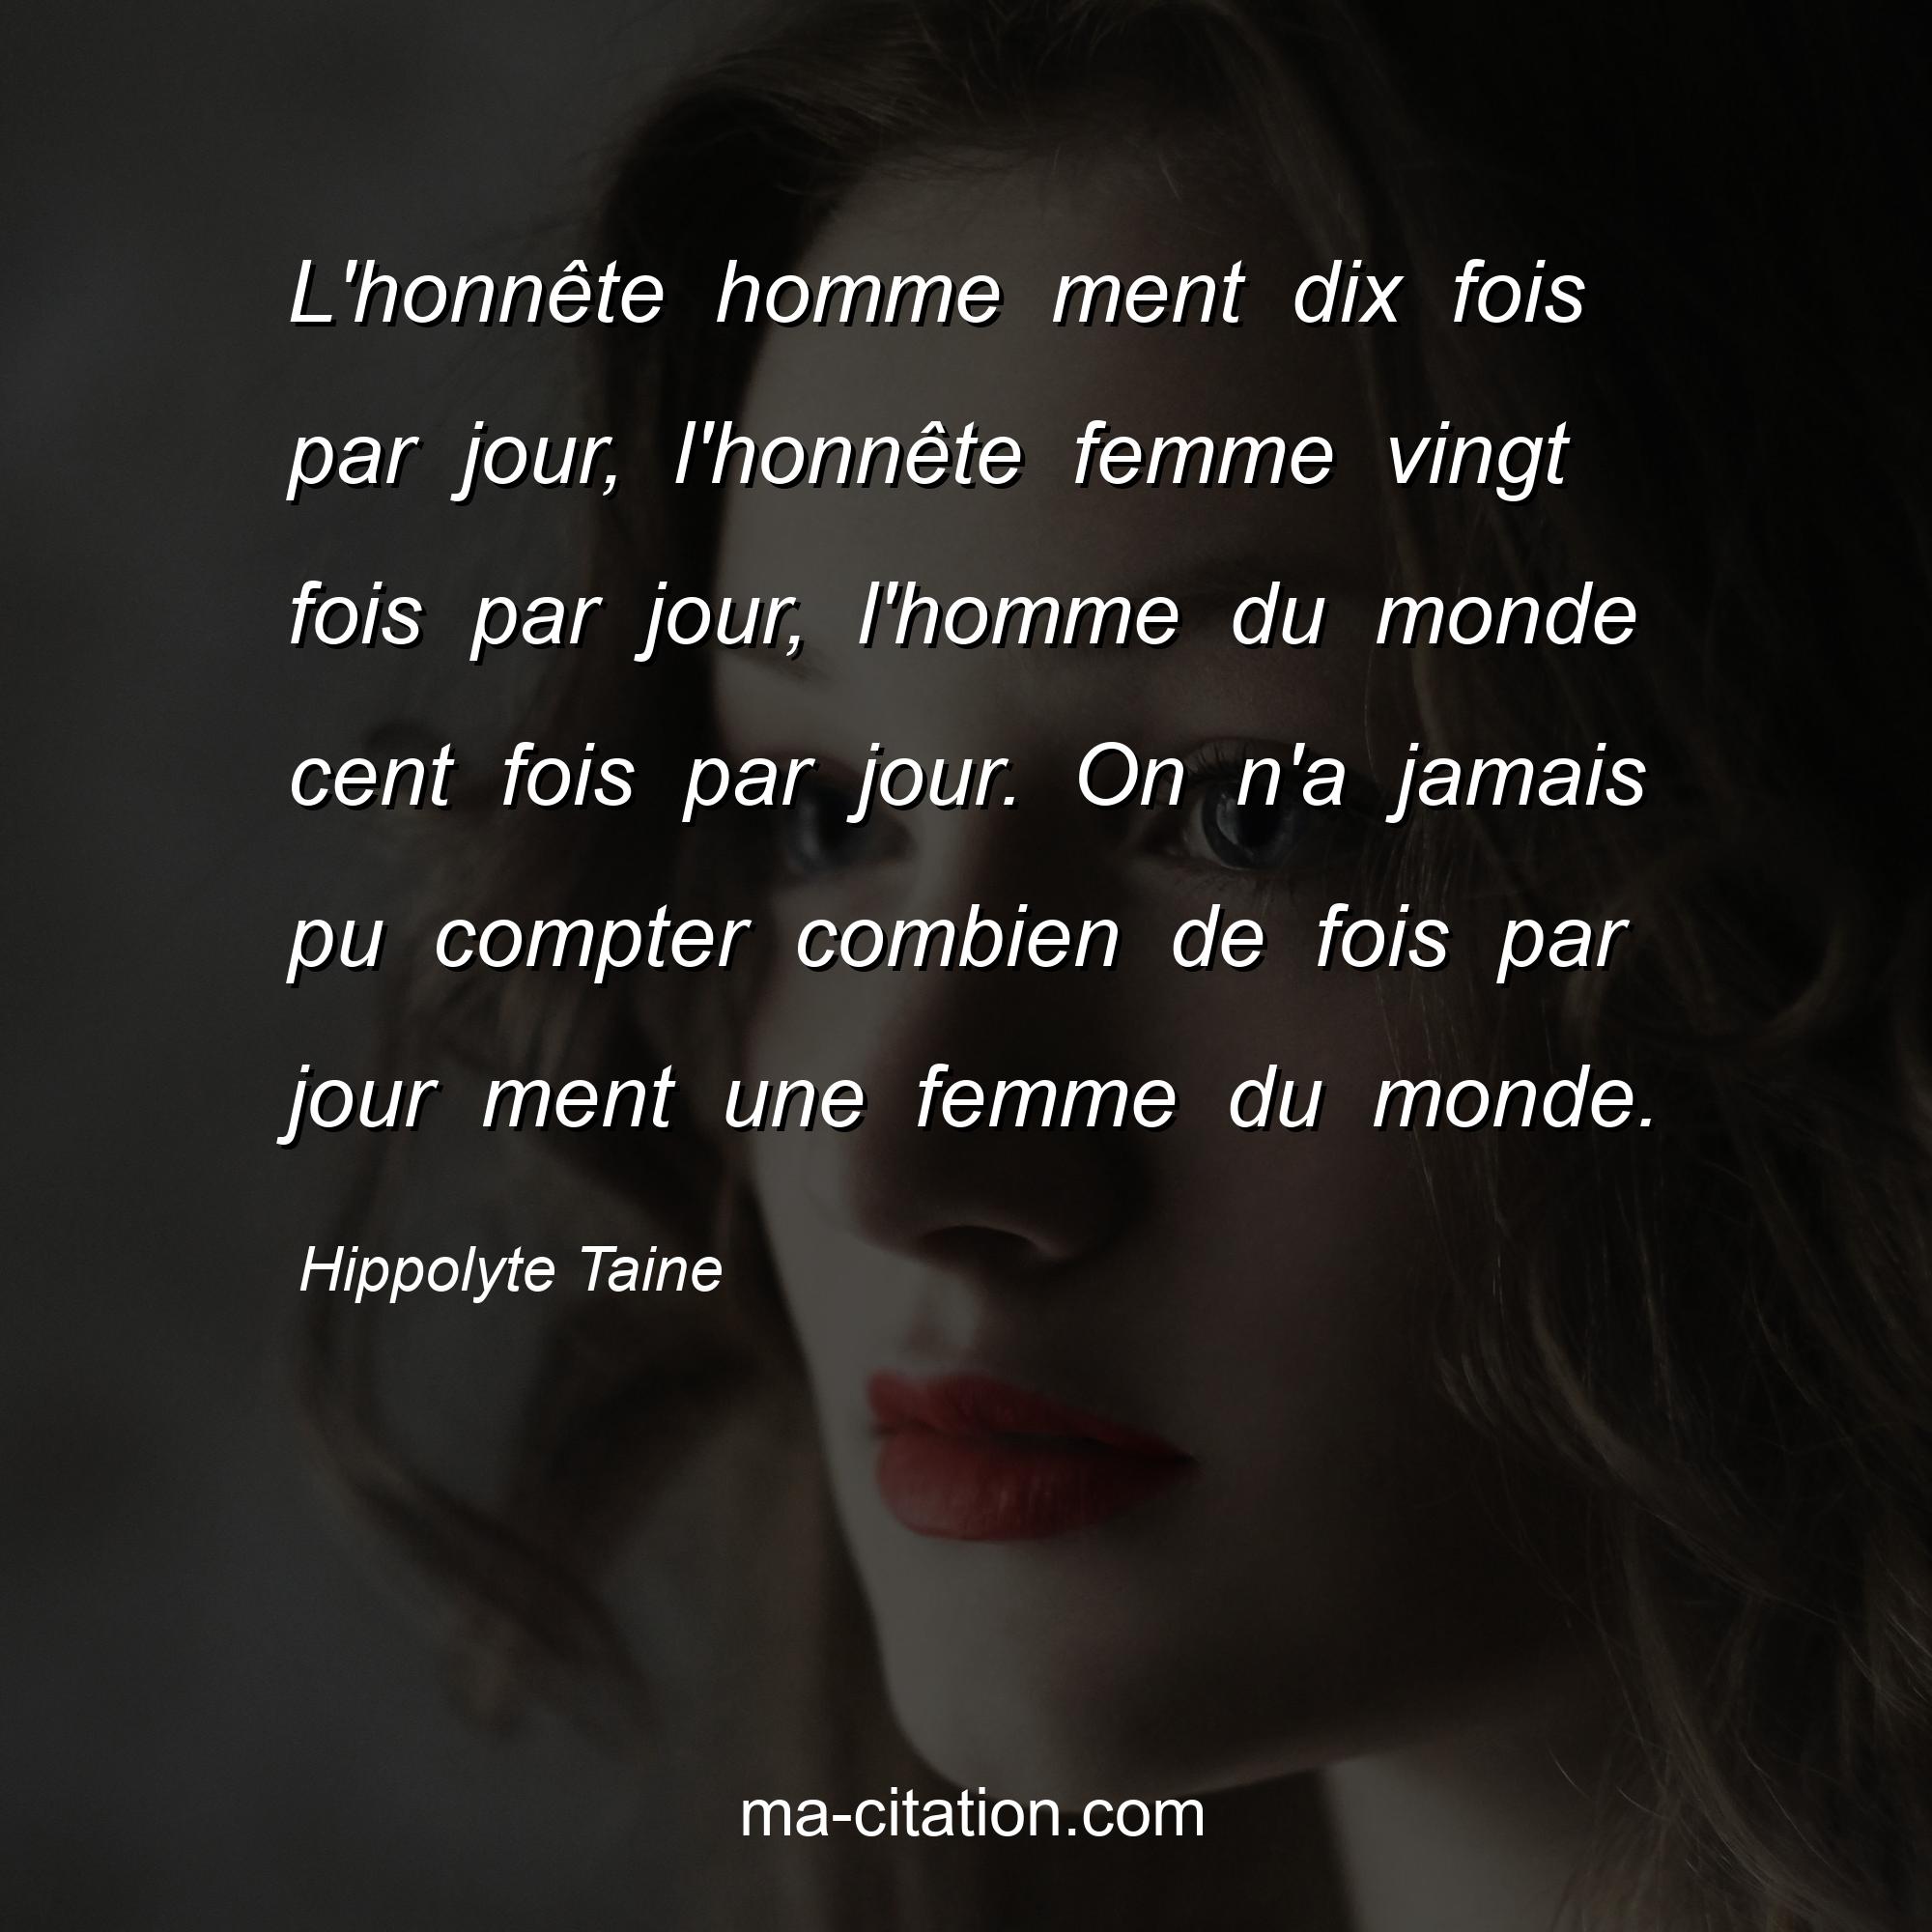 Hippolyte Taine : L'honnête homme ment dix fois par jour, l'honnête femme vingt fois par jour, l'homme du monde cent fois par jour. On n'a jamais pu compter combien de fois par jour ment une femme du monde.